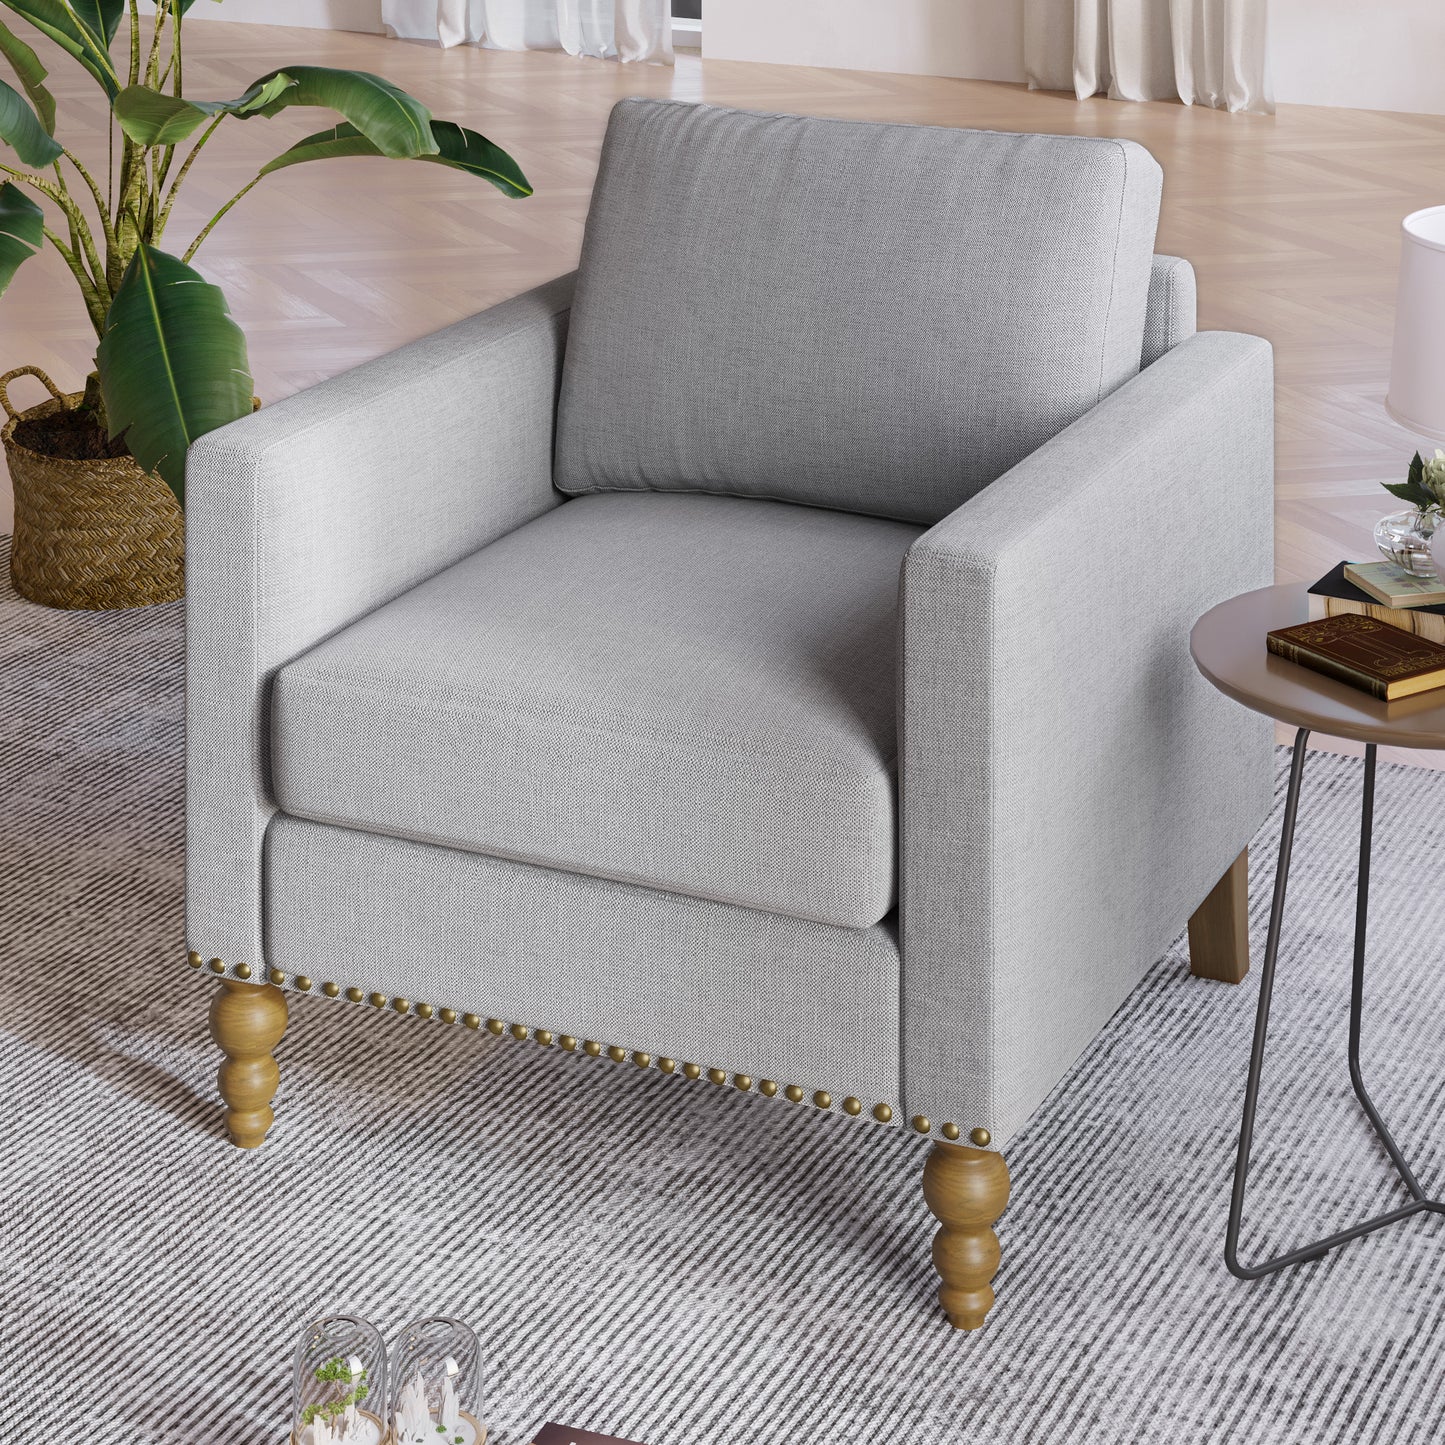 Light Gray Classic Linen Accent Chair